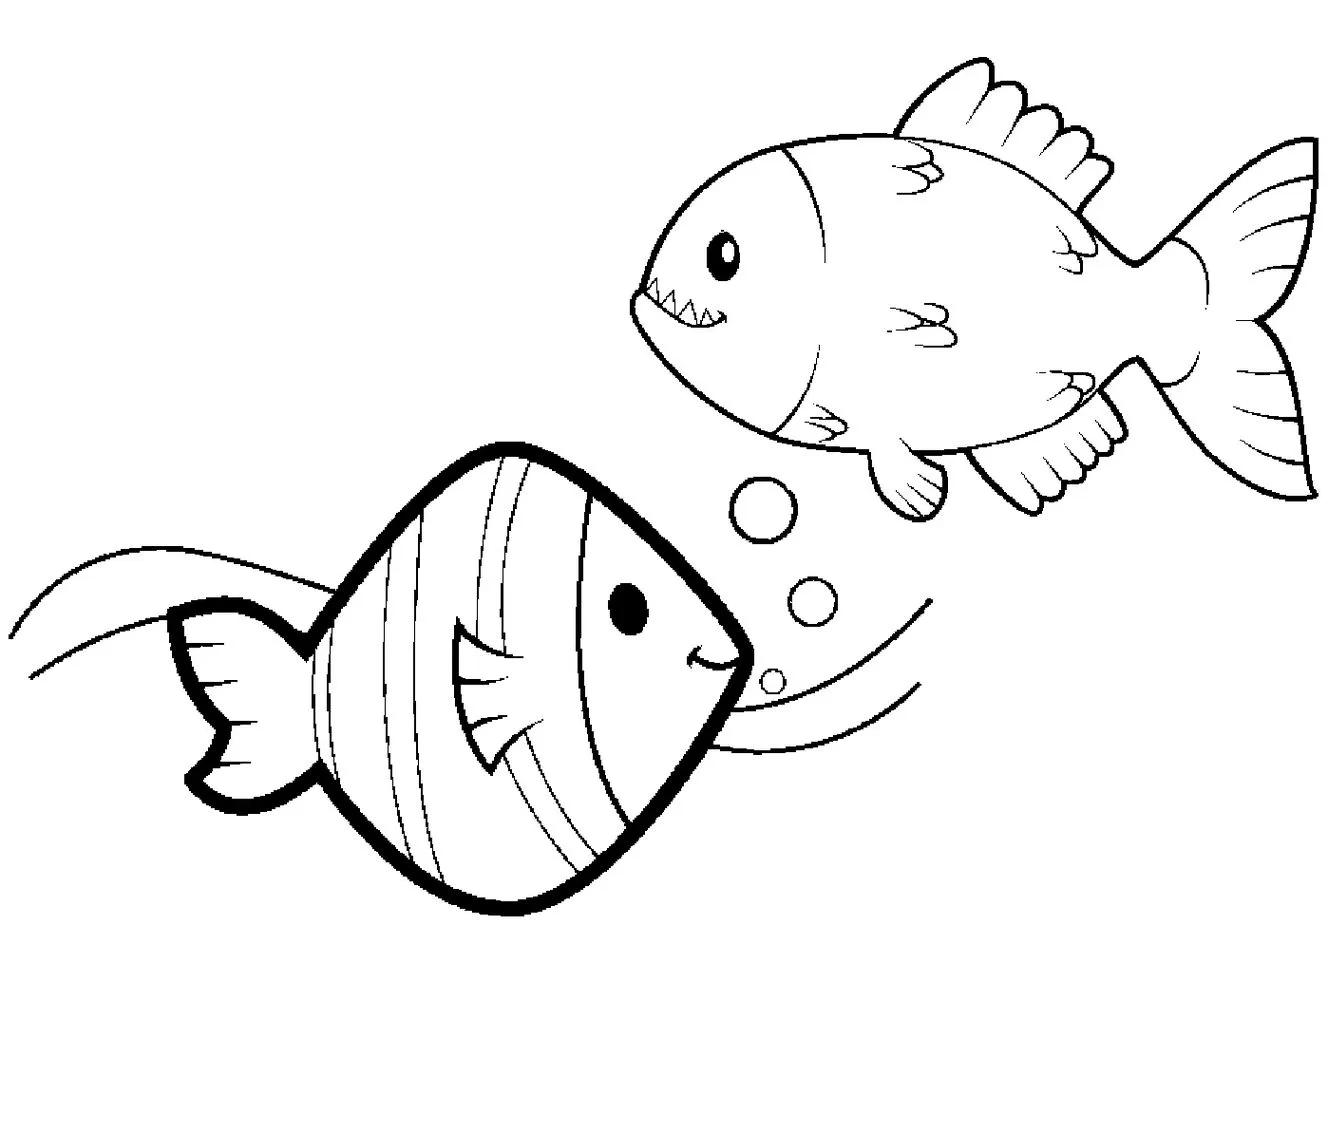 O peixe e a piranha para colorir e pintar